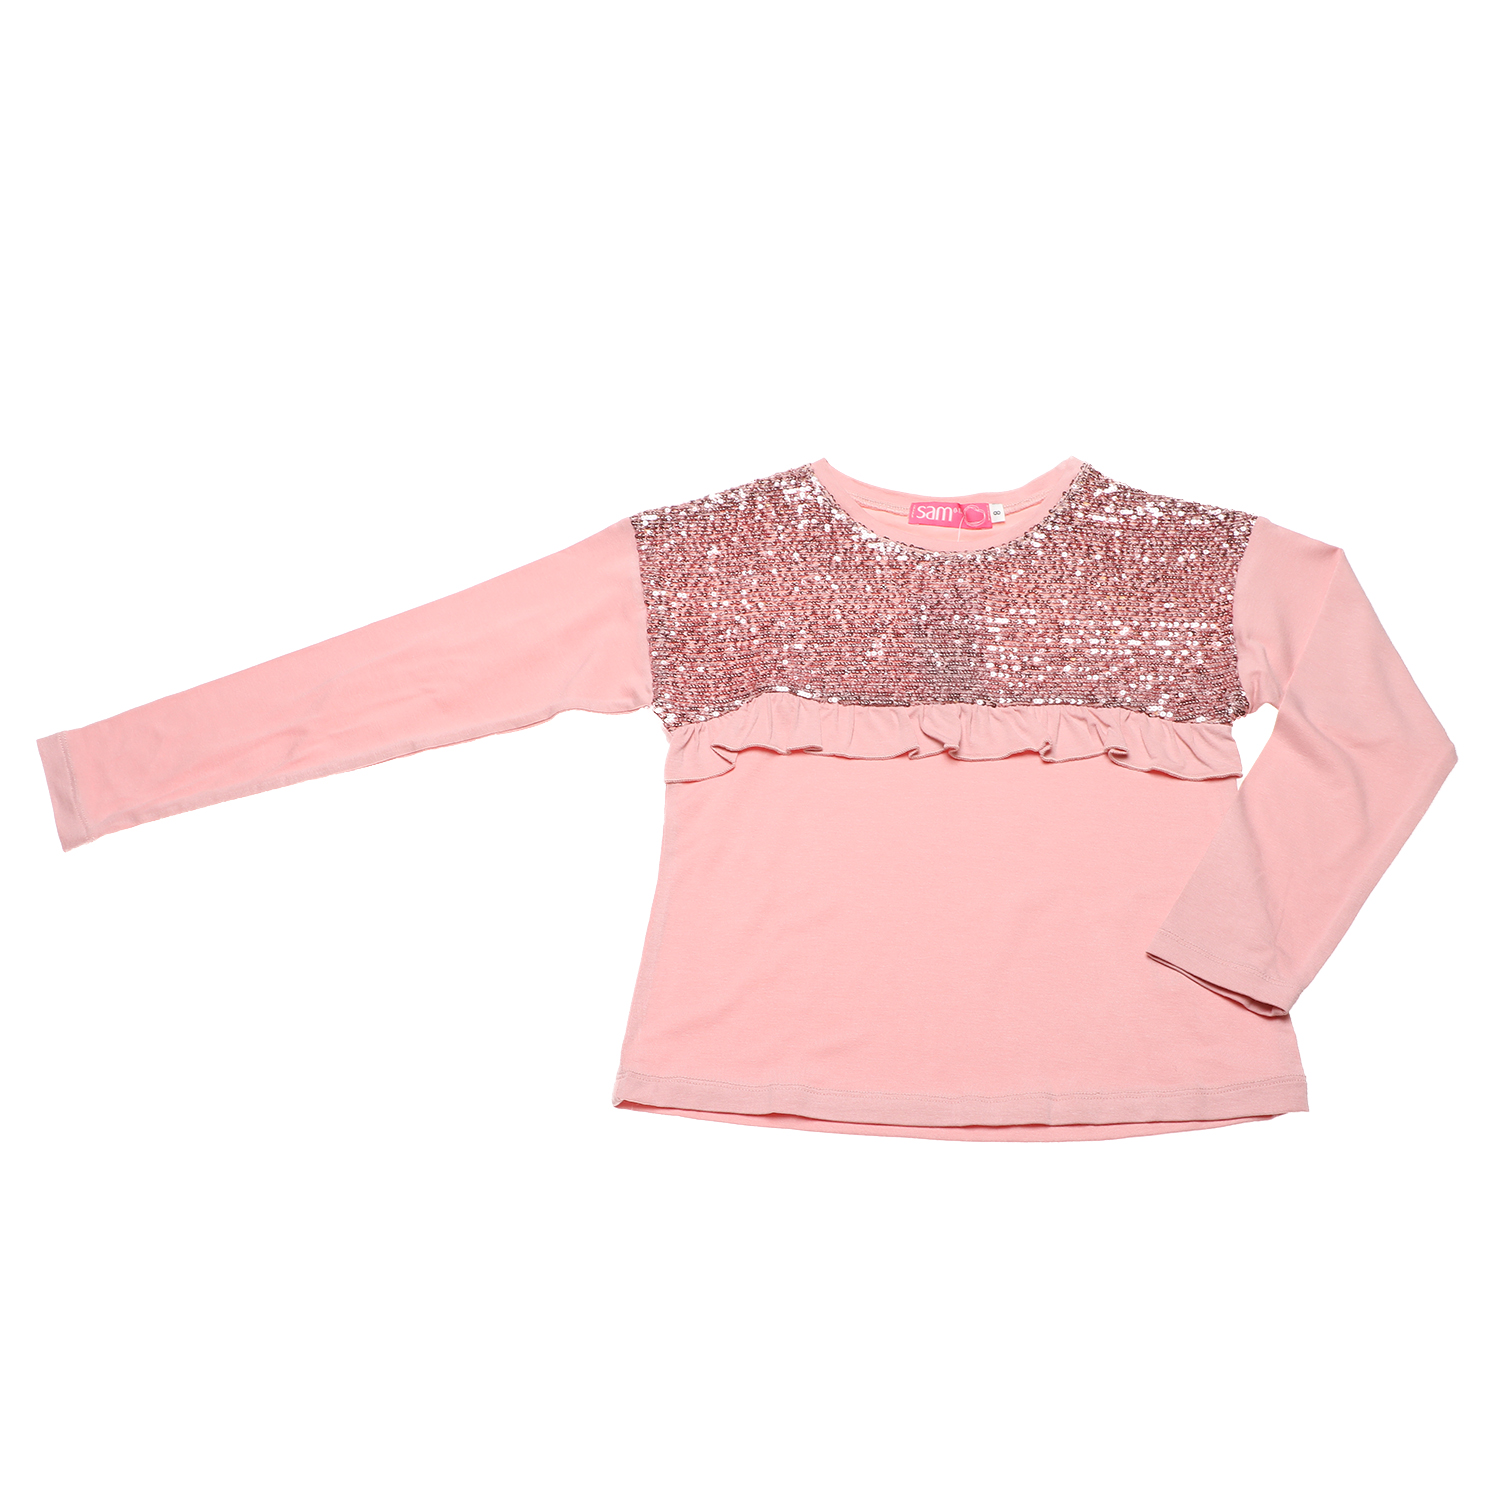 Παιδικά/Girls/Ρούχα/Μπλούζες Μακρυμάνικες SAM 0-13 - Παιδική μπλούζα SAM 0-13 ροζ